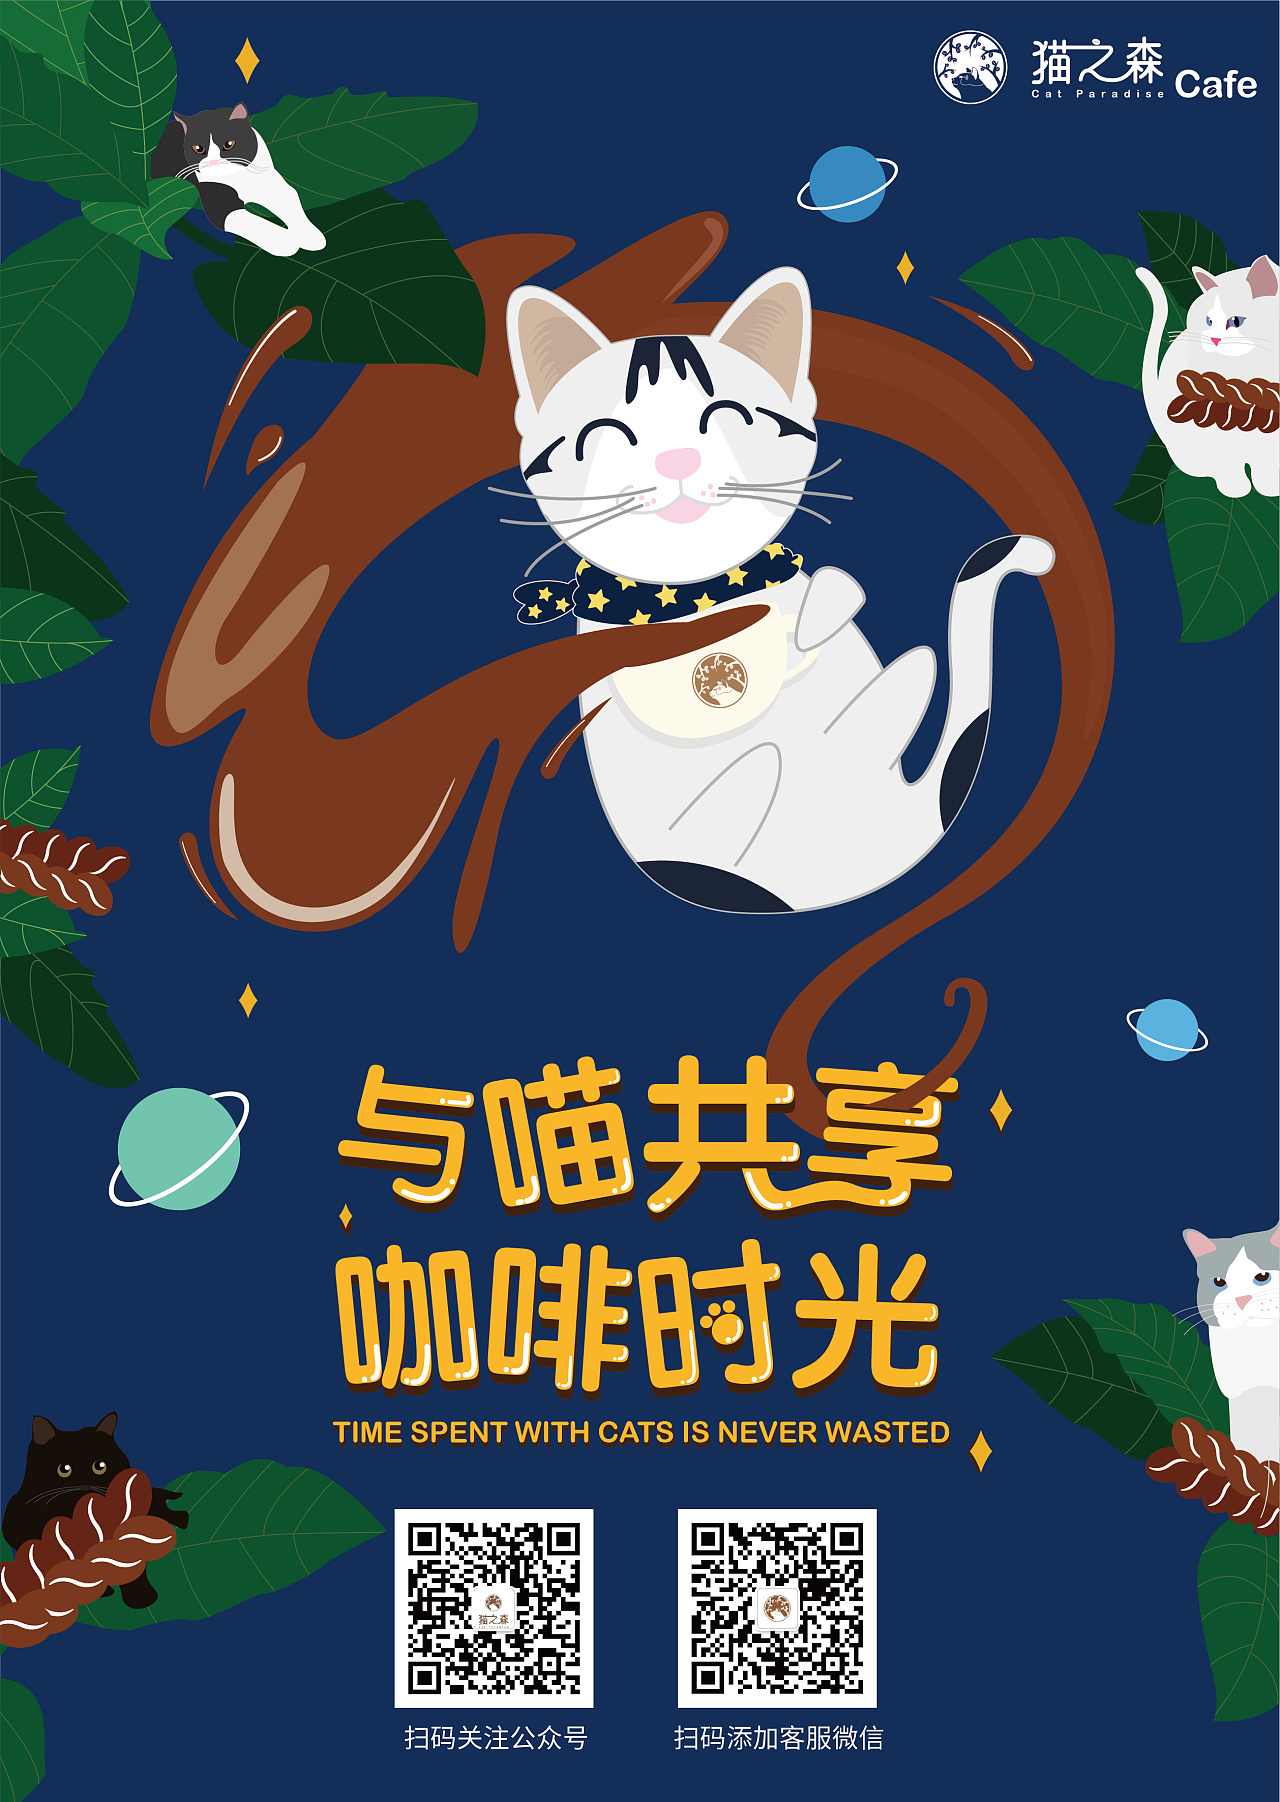 《爱猫之城》曝“猫狗双全”海报 狗年第一部真猫片惊喜来袭